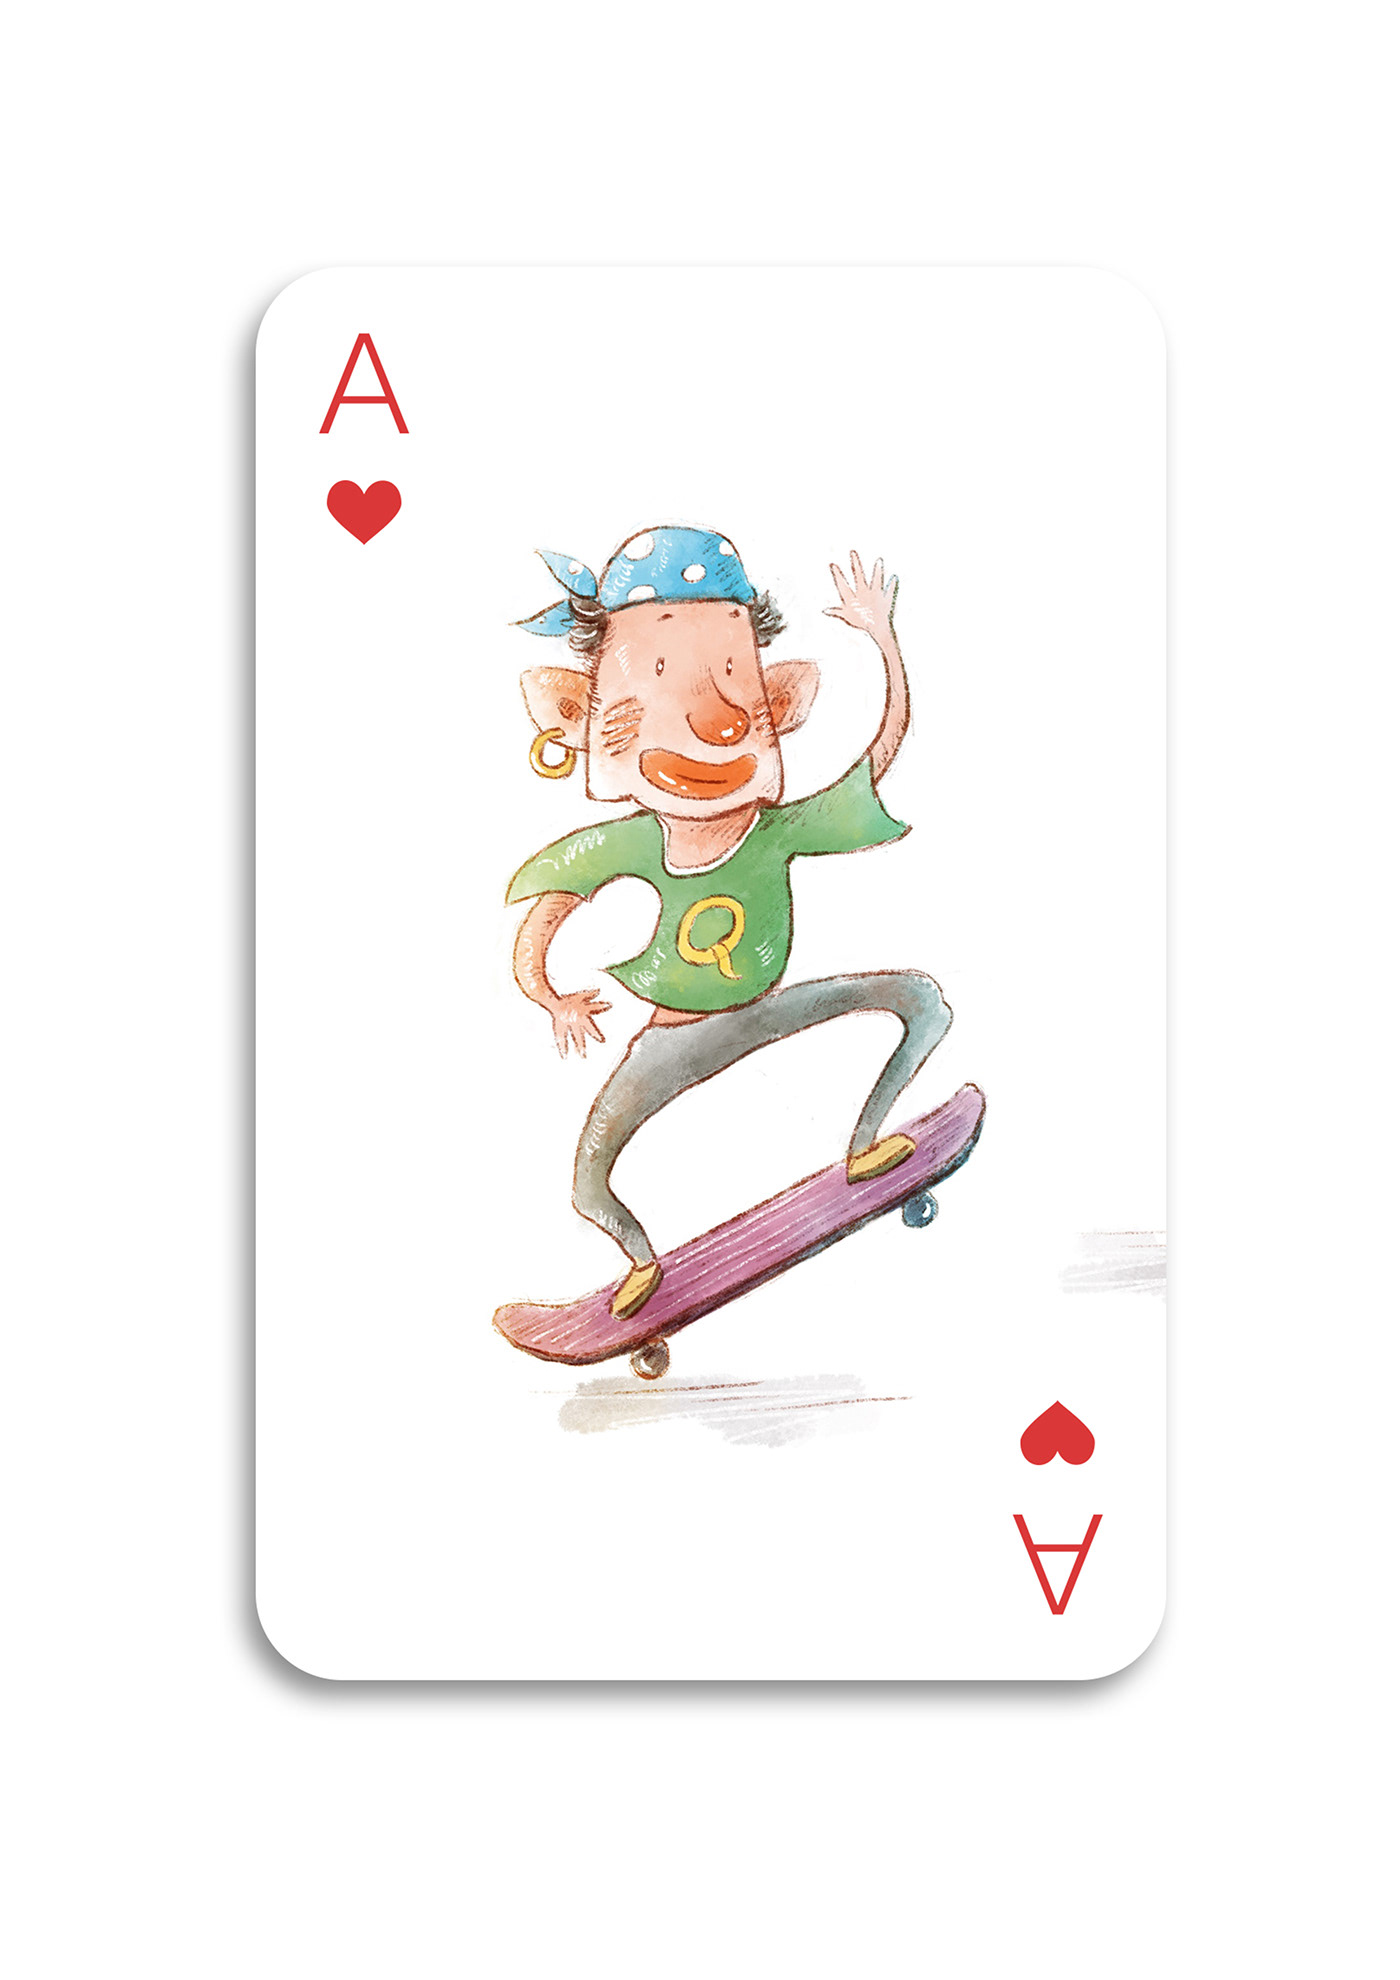 插画文艺森系手绘水彩扑克Playing cardcard创意夸张个性鲜明趣味可爱